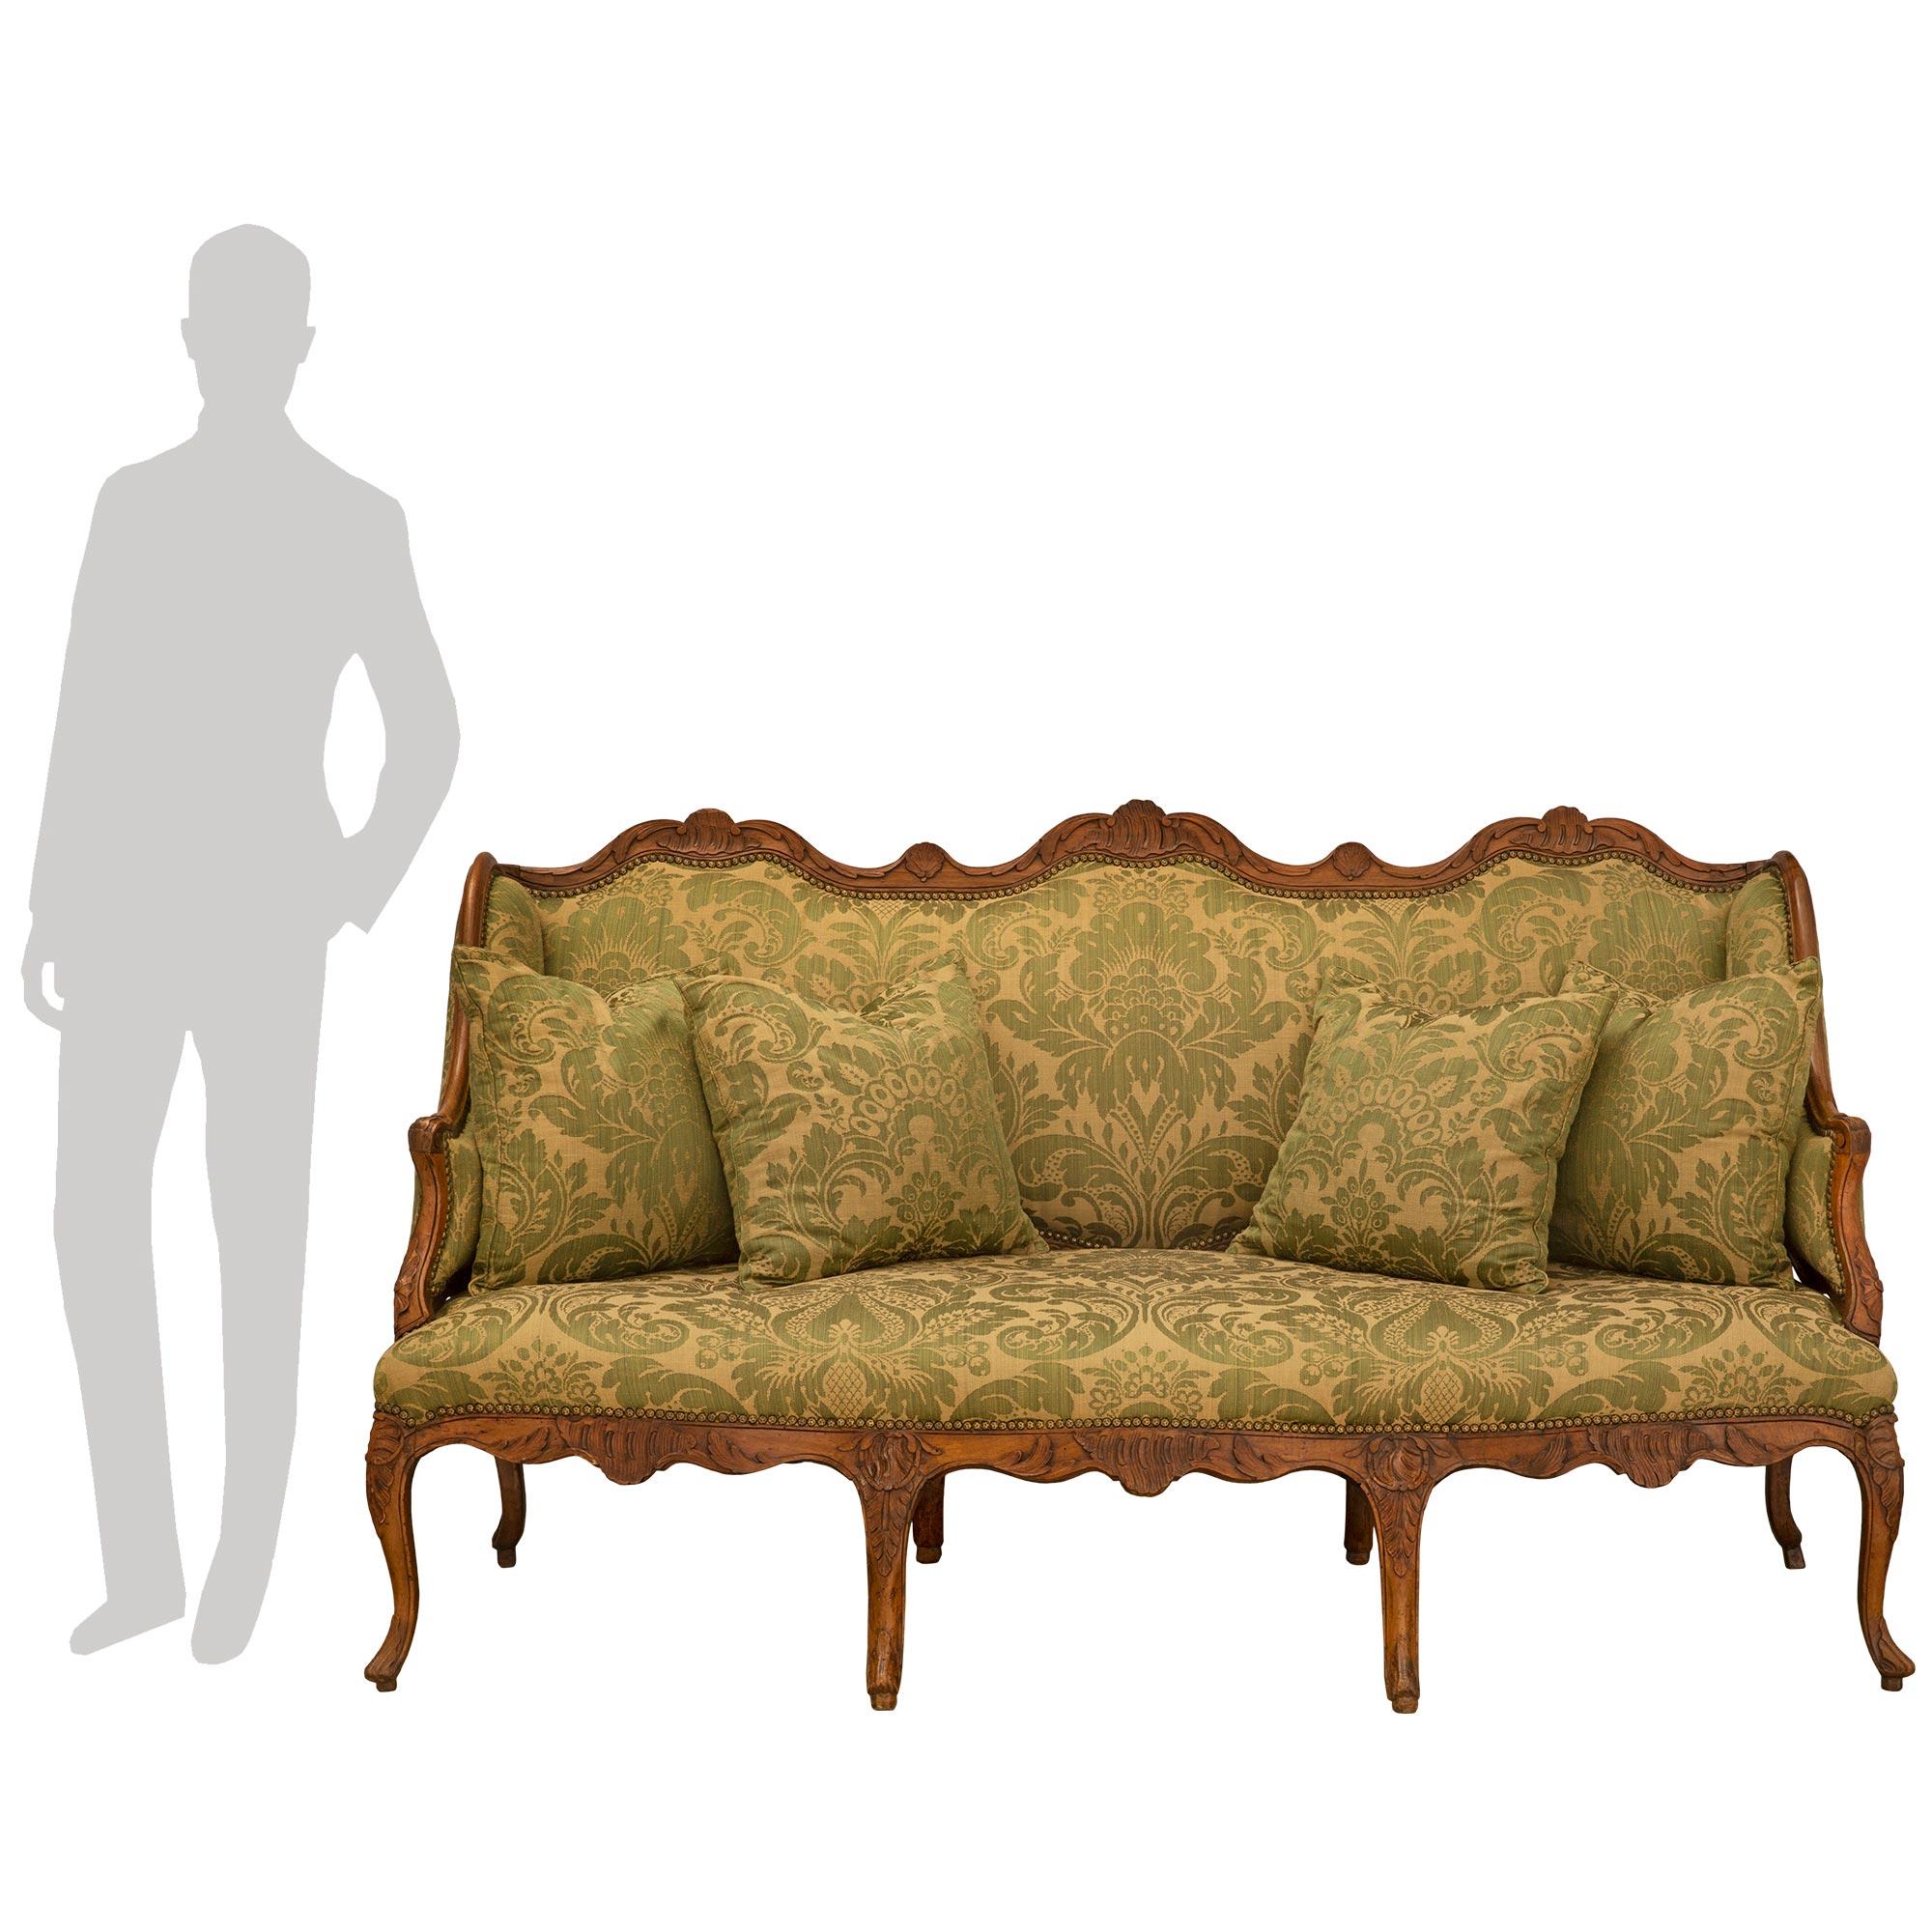 Un sensationnel canapé en noyer de style Louis XV du début du 19e siècle. Huit impressionnants pieds cabriolets à volutes et à sculptures florales soutiennent ce meuble. Chaque pièce est centrée d'un motif de feuille d'acanthe sculpté. Au-dessus se